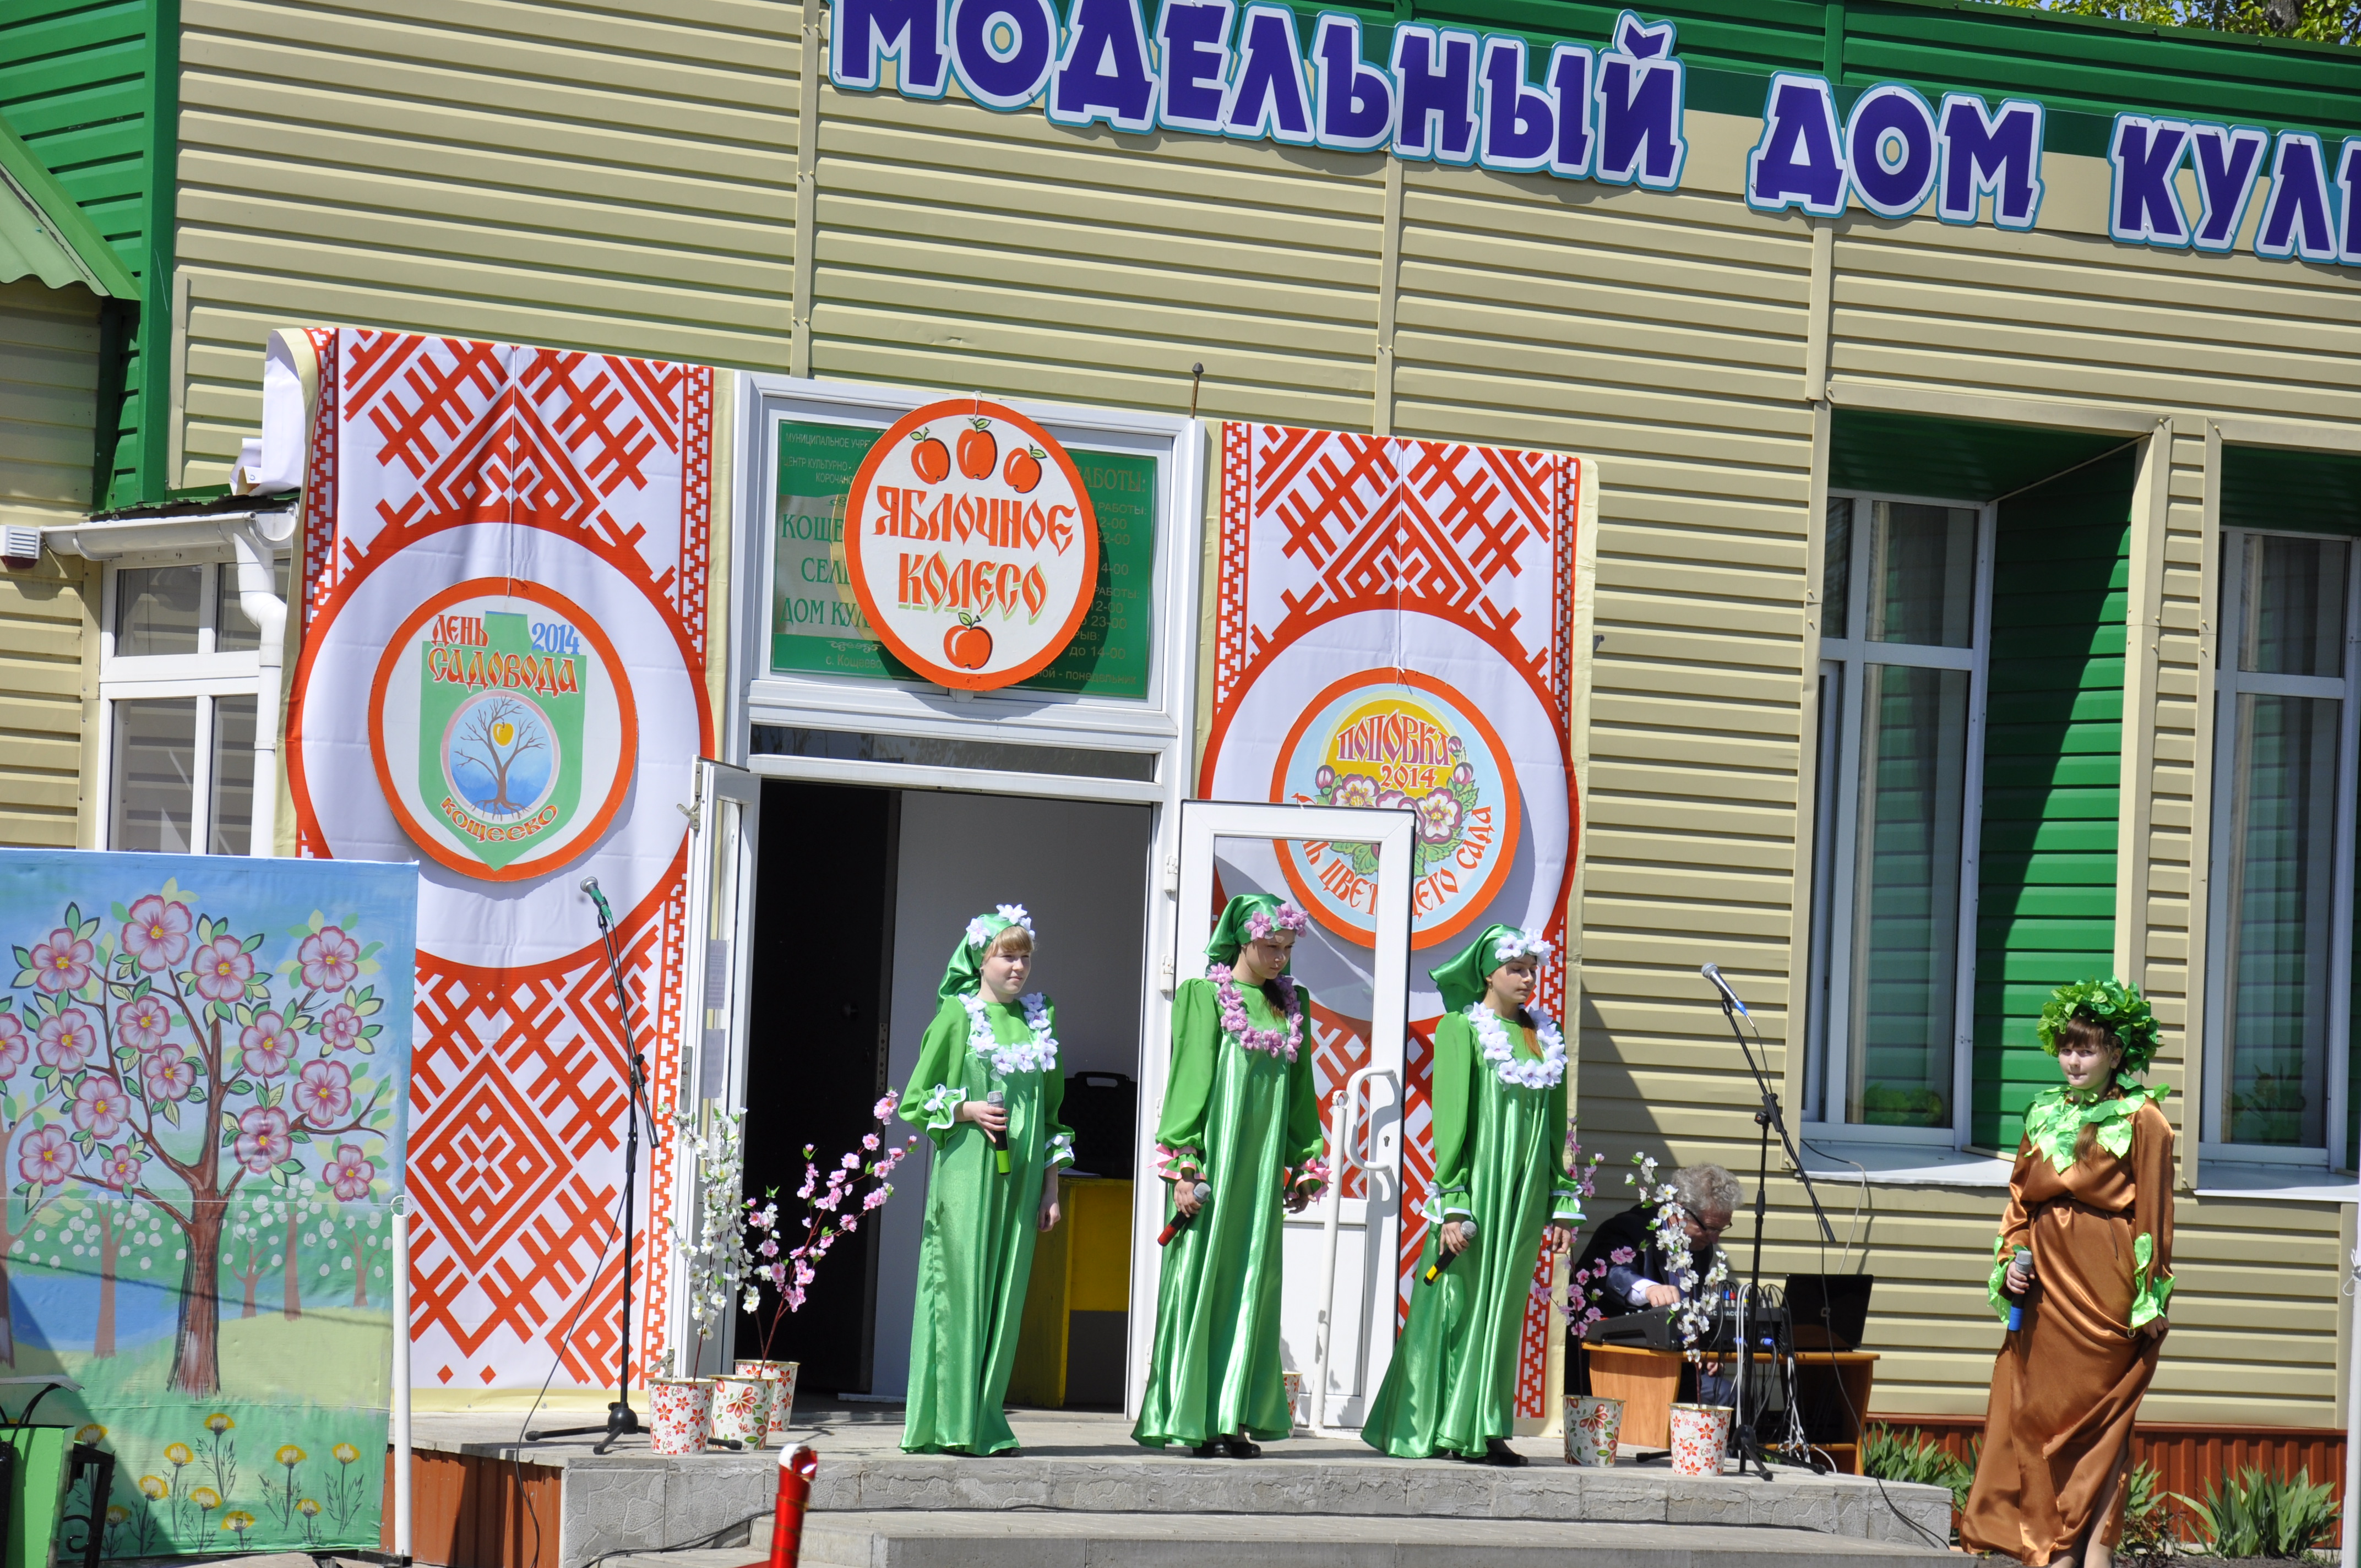 Кощеевский модельный сельский дом культуры